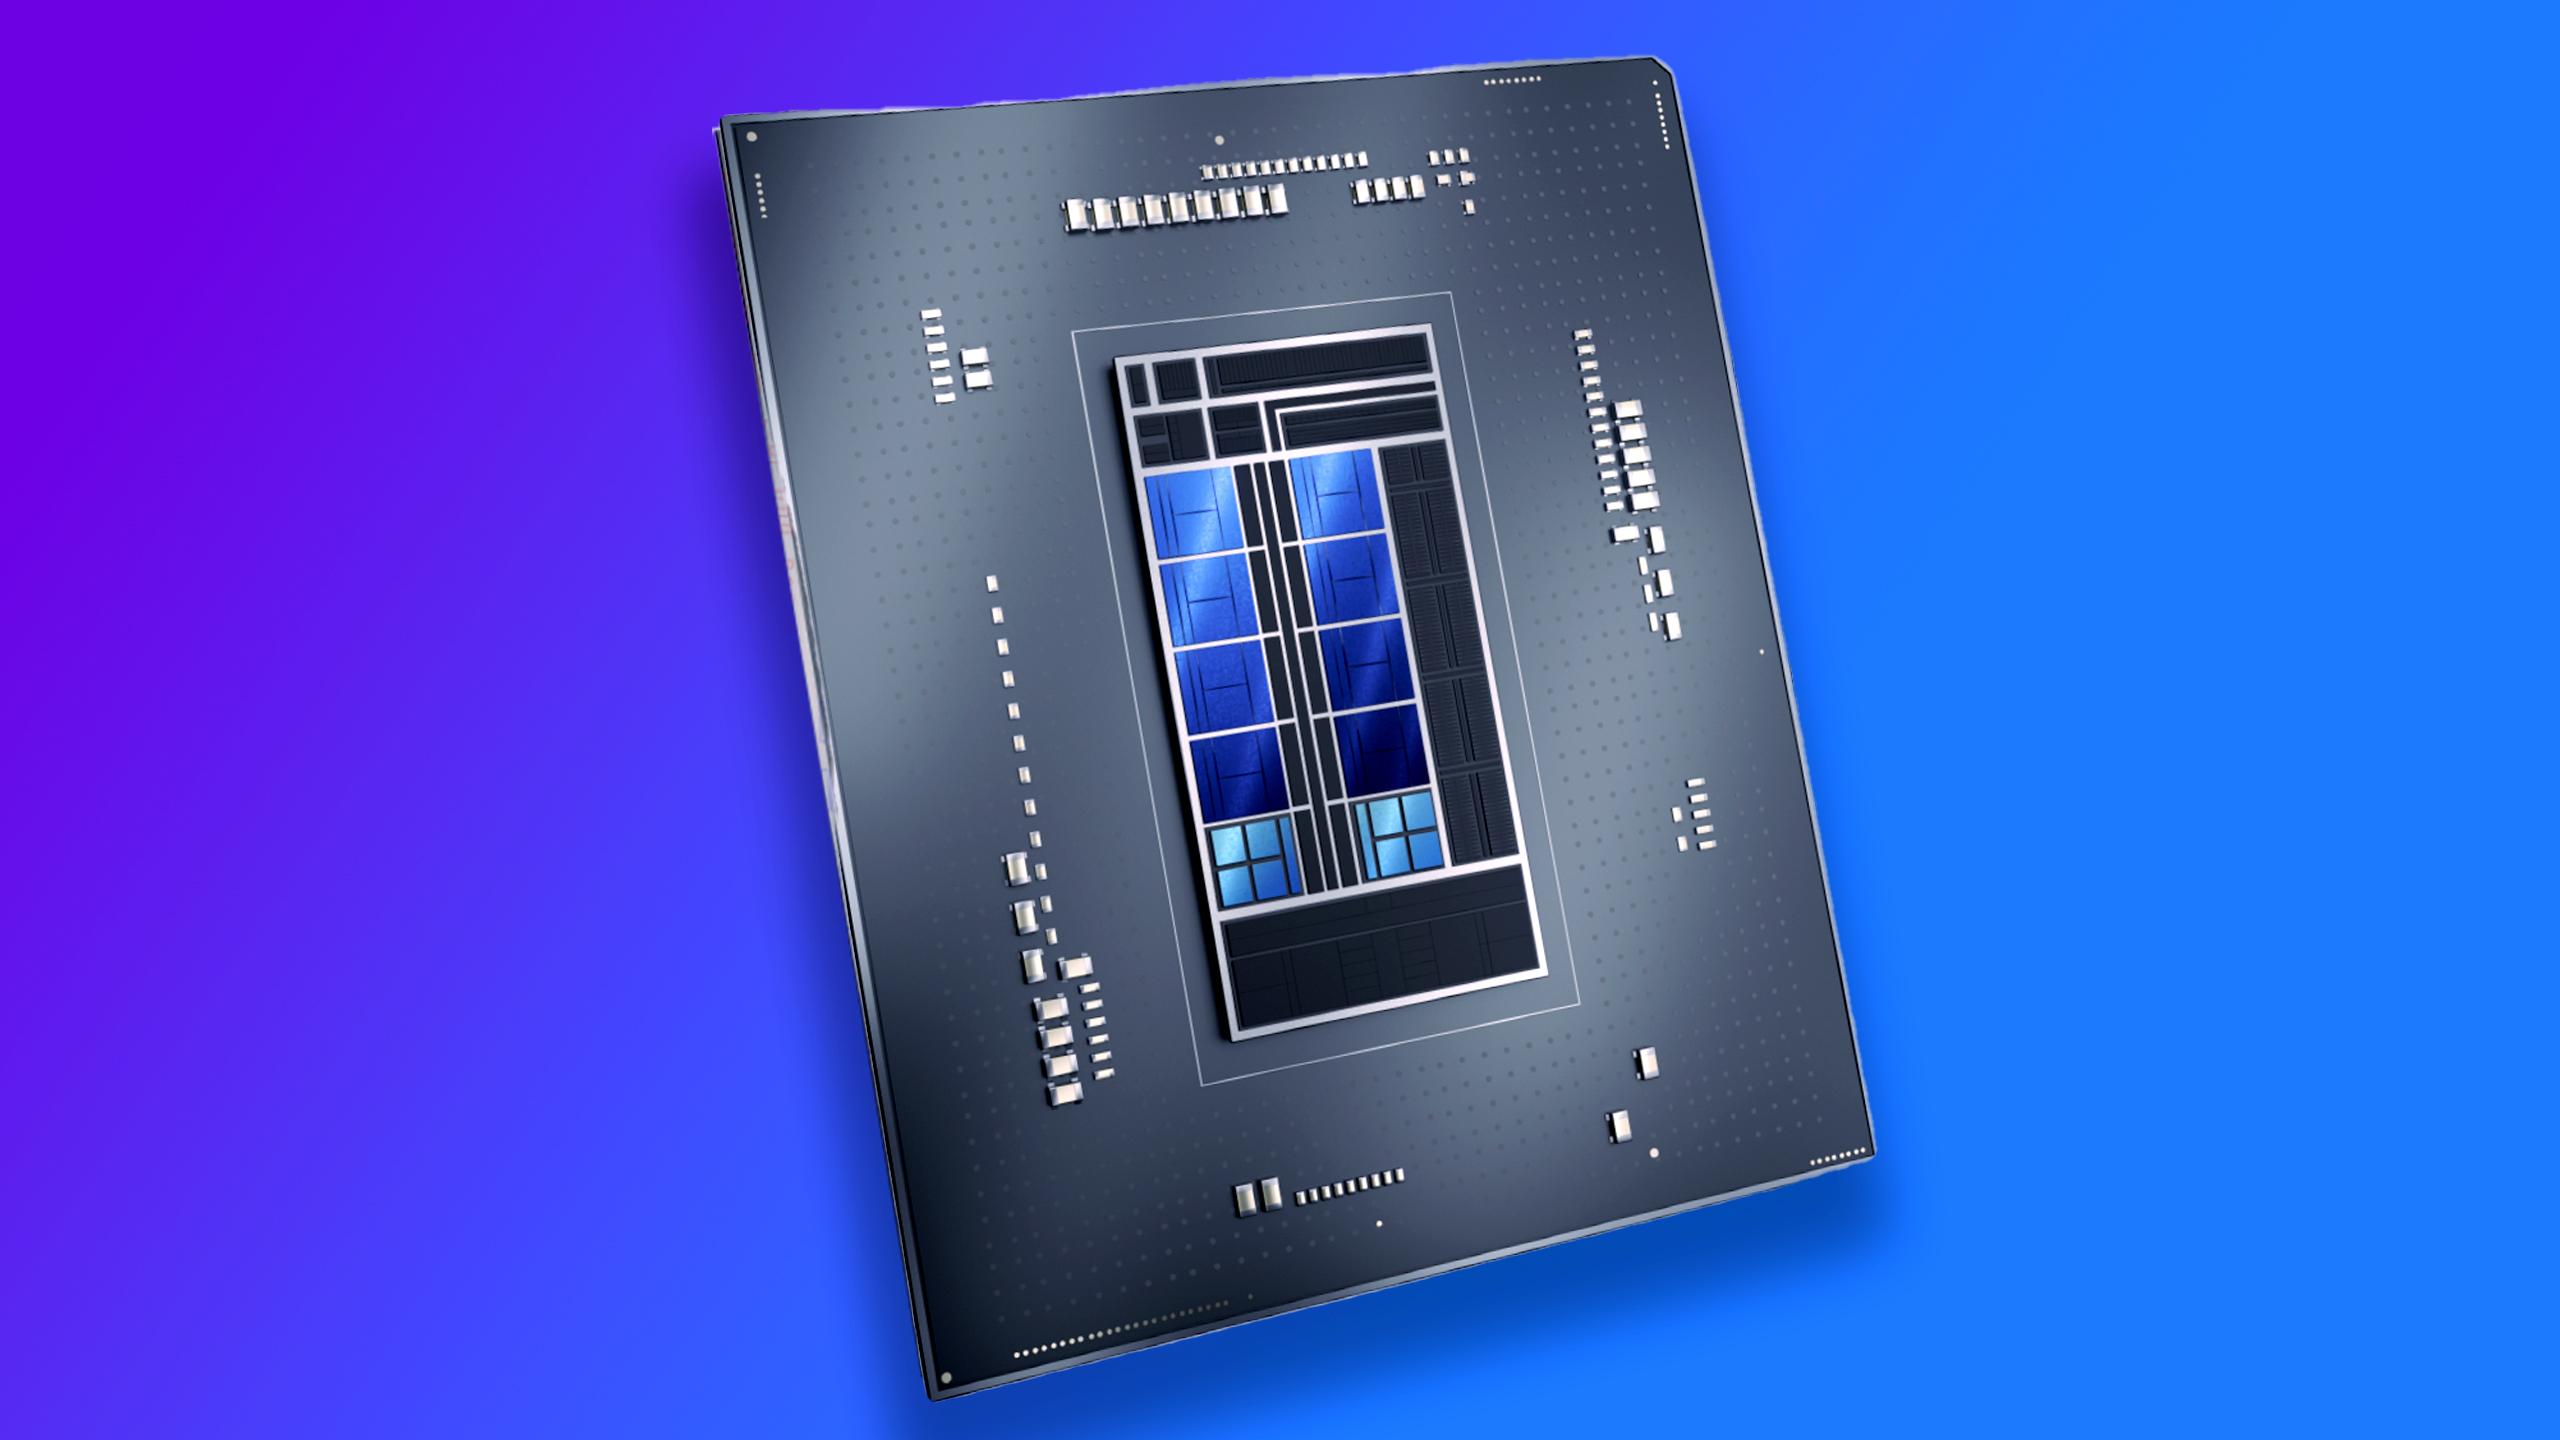 Intel Alder Lake chip render over gradient background